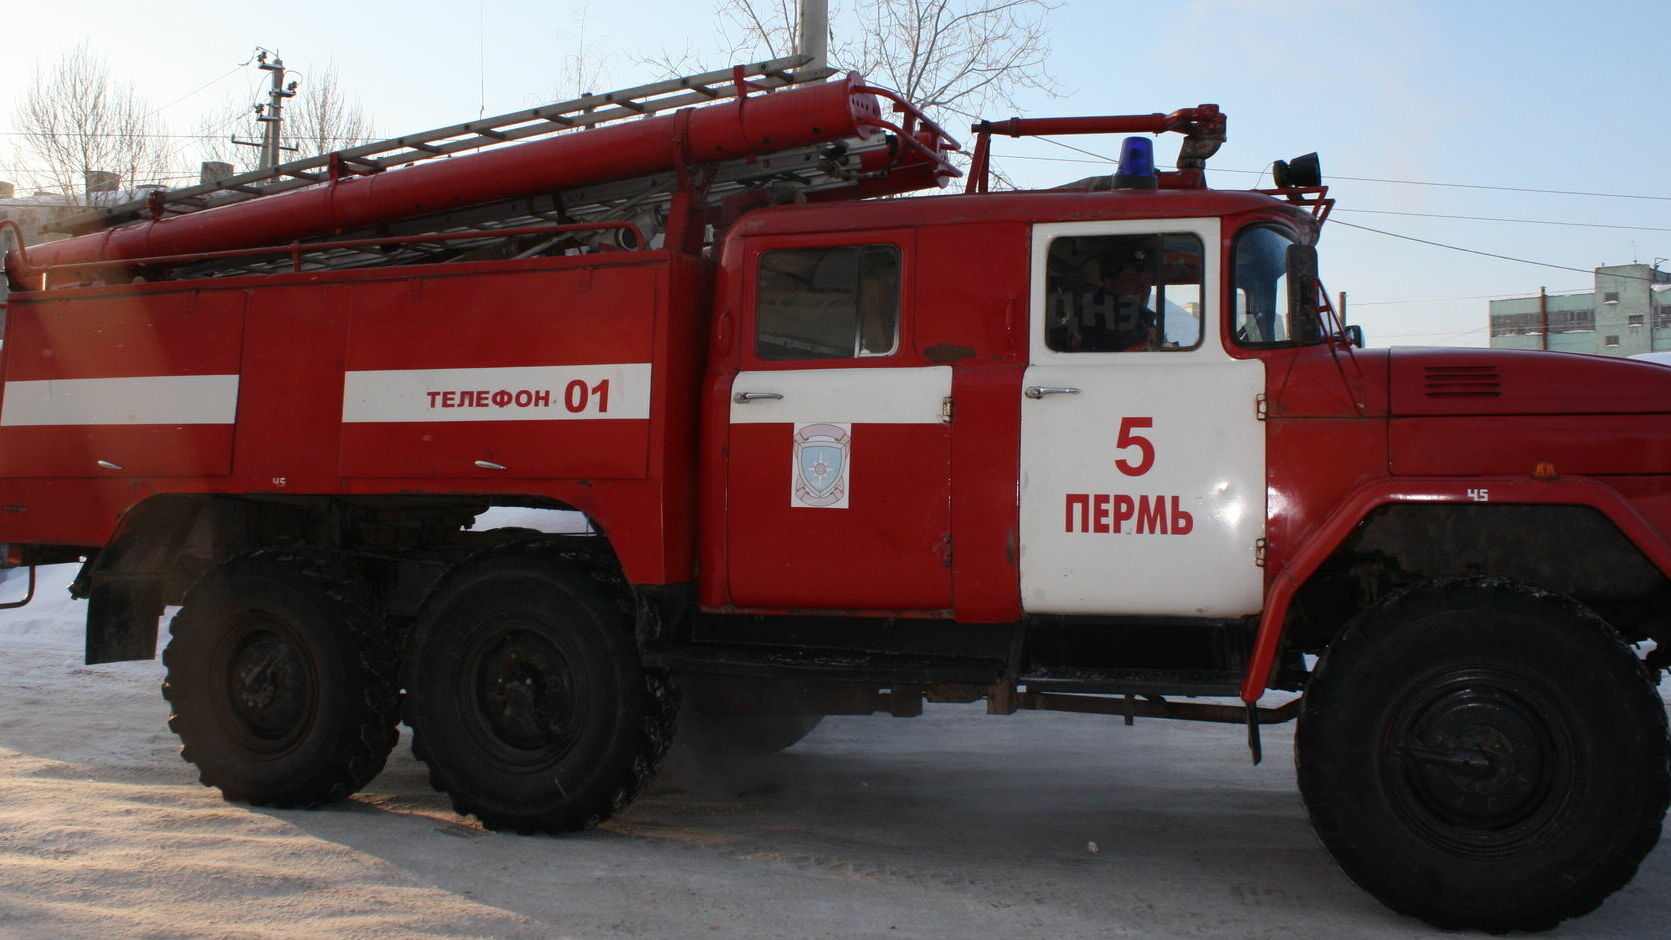 В Перми обогреватель стал причиной пожара. Погиб 89-летний пенсионер